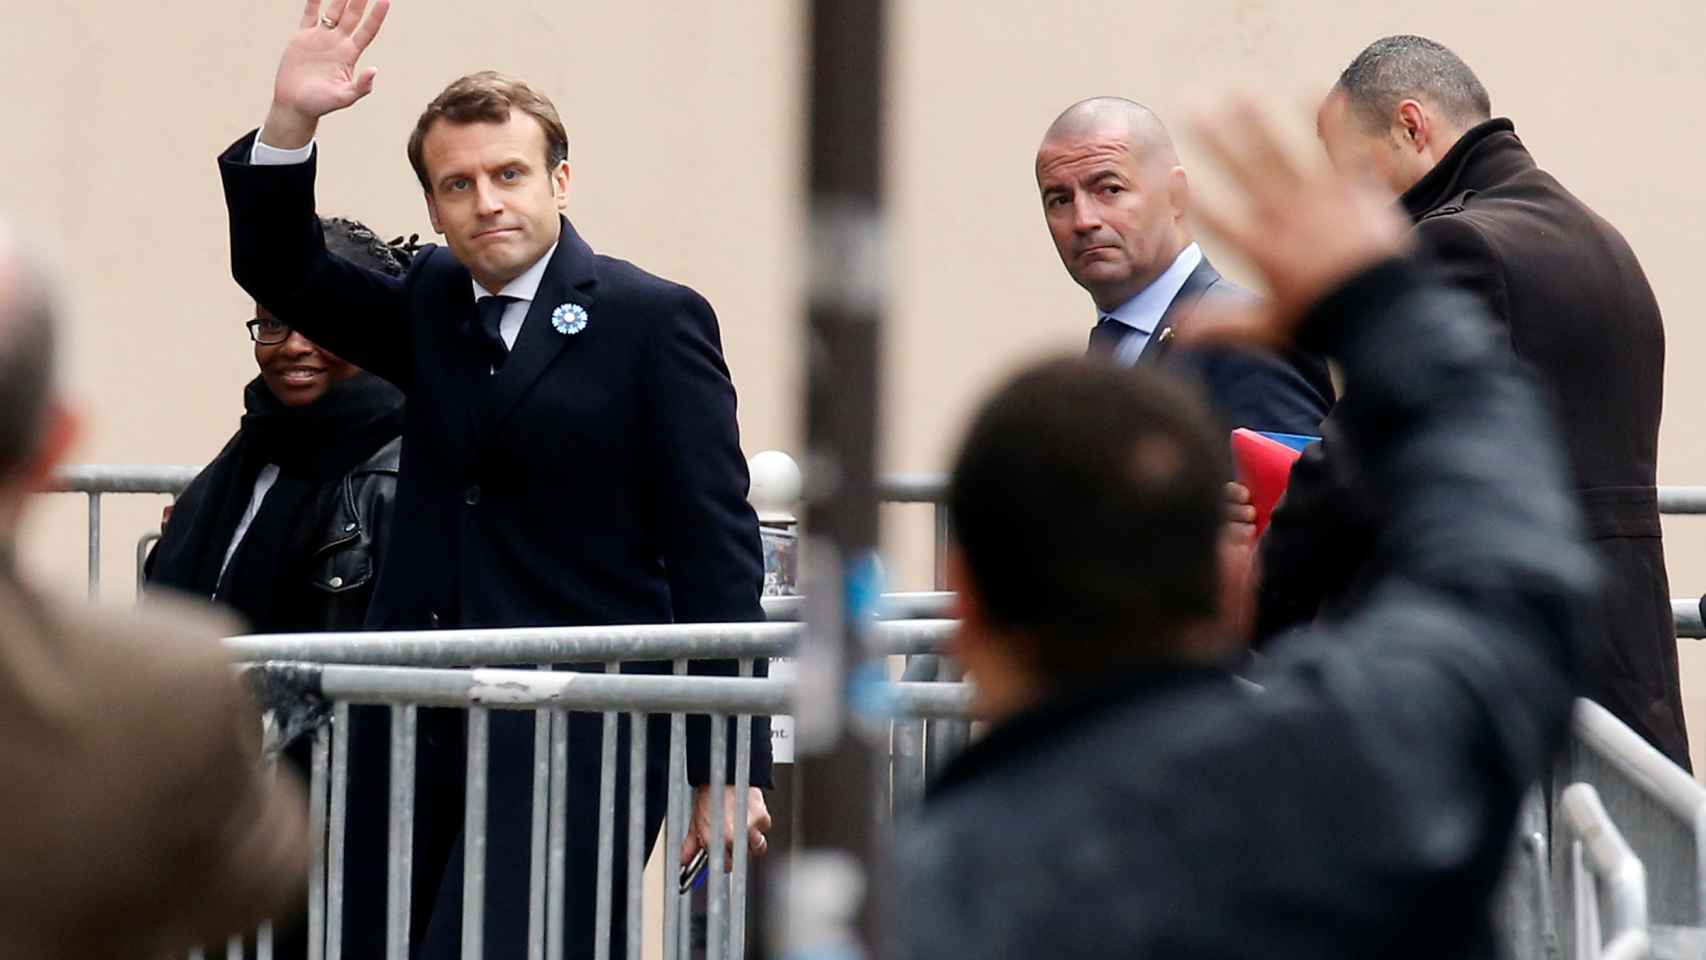 Macron llegando este lunes a las oficinas de su partido en París